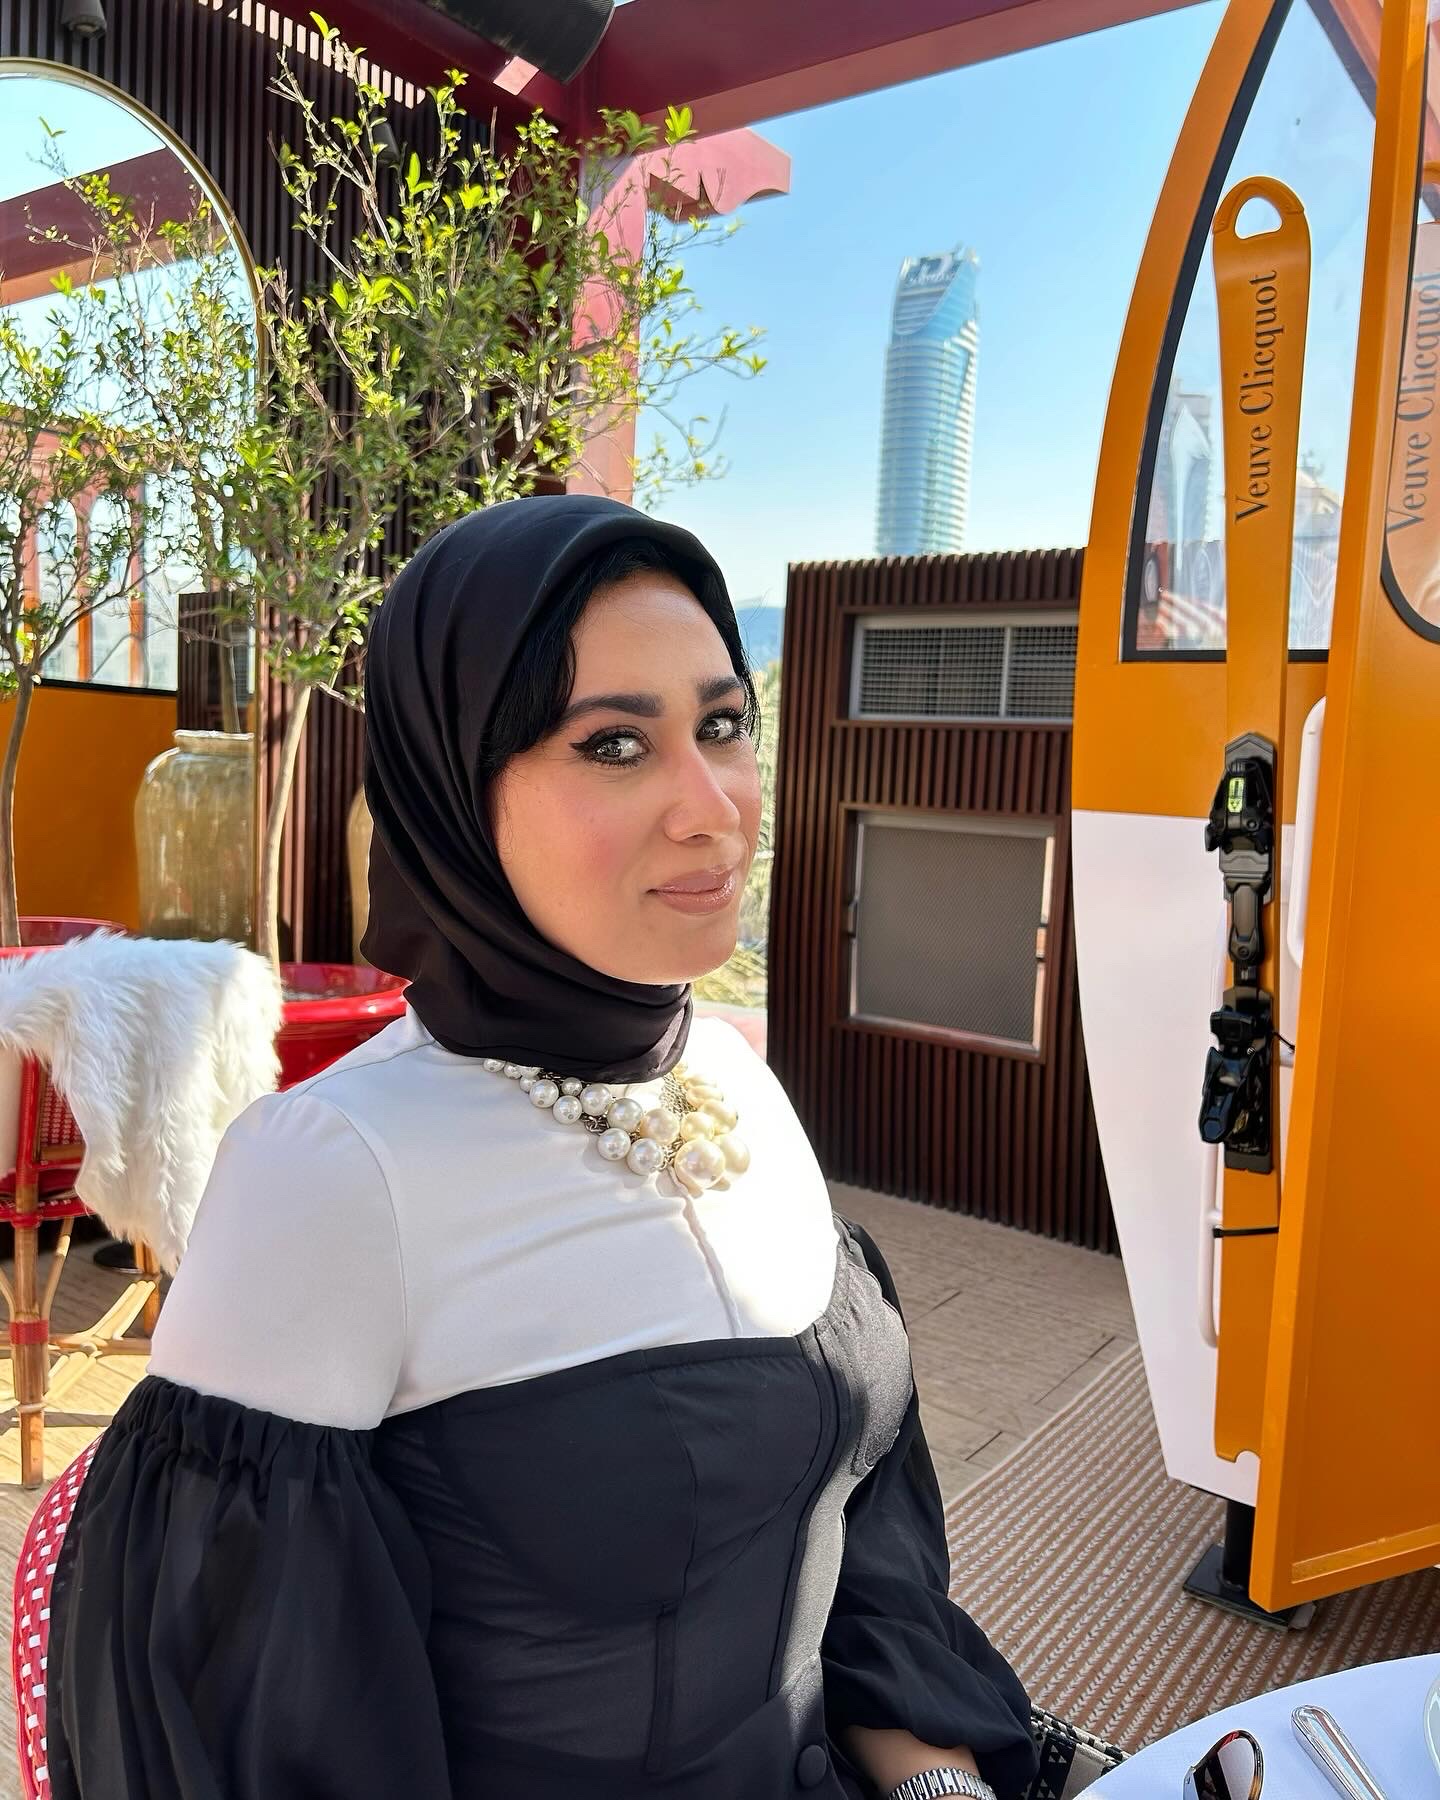 profile of Zaïnab, a Moroccan expat living in Dubai